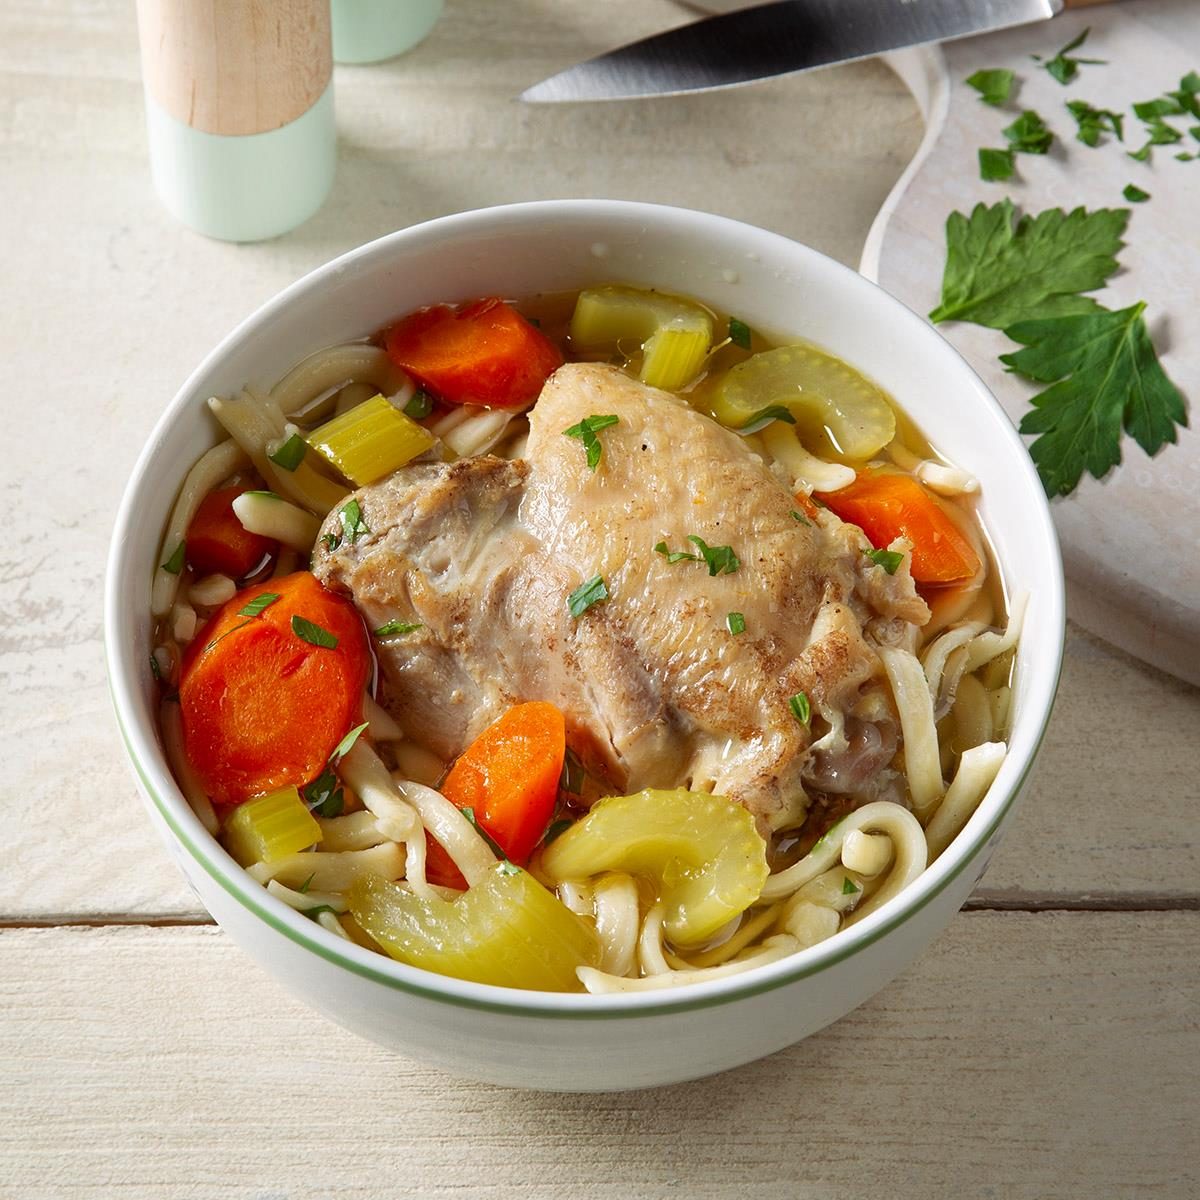 https://www.tasteofhome.com/wp-content/uploads/2020/01/Grandma-s-Pressure-Cooker-Chicken-Noodle-Soup_EXPS_FT20_102990_F_0109_1-4.jpg